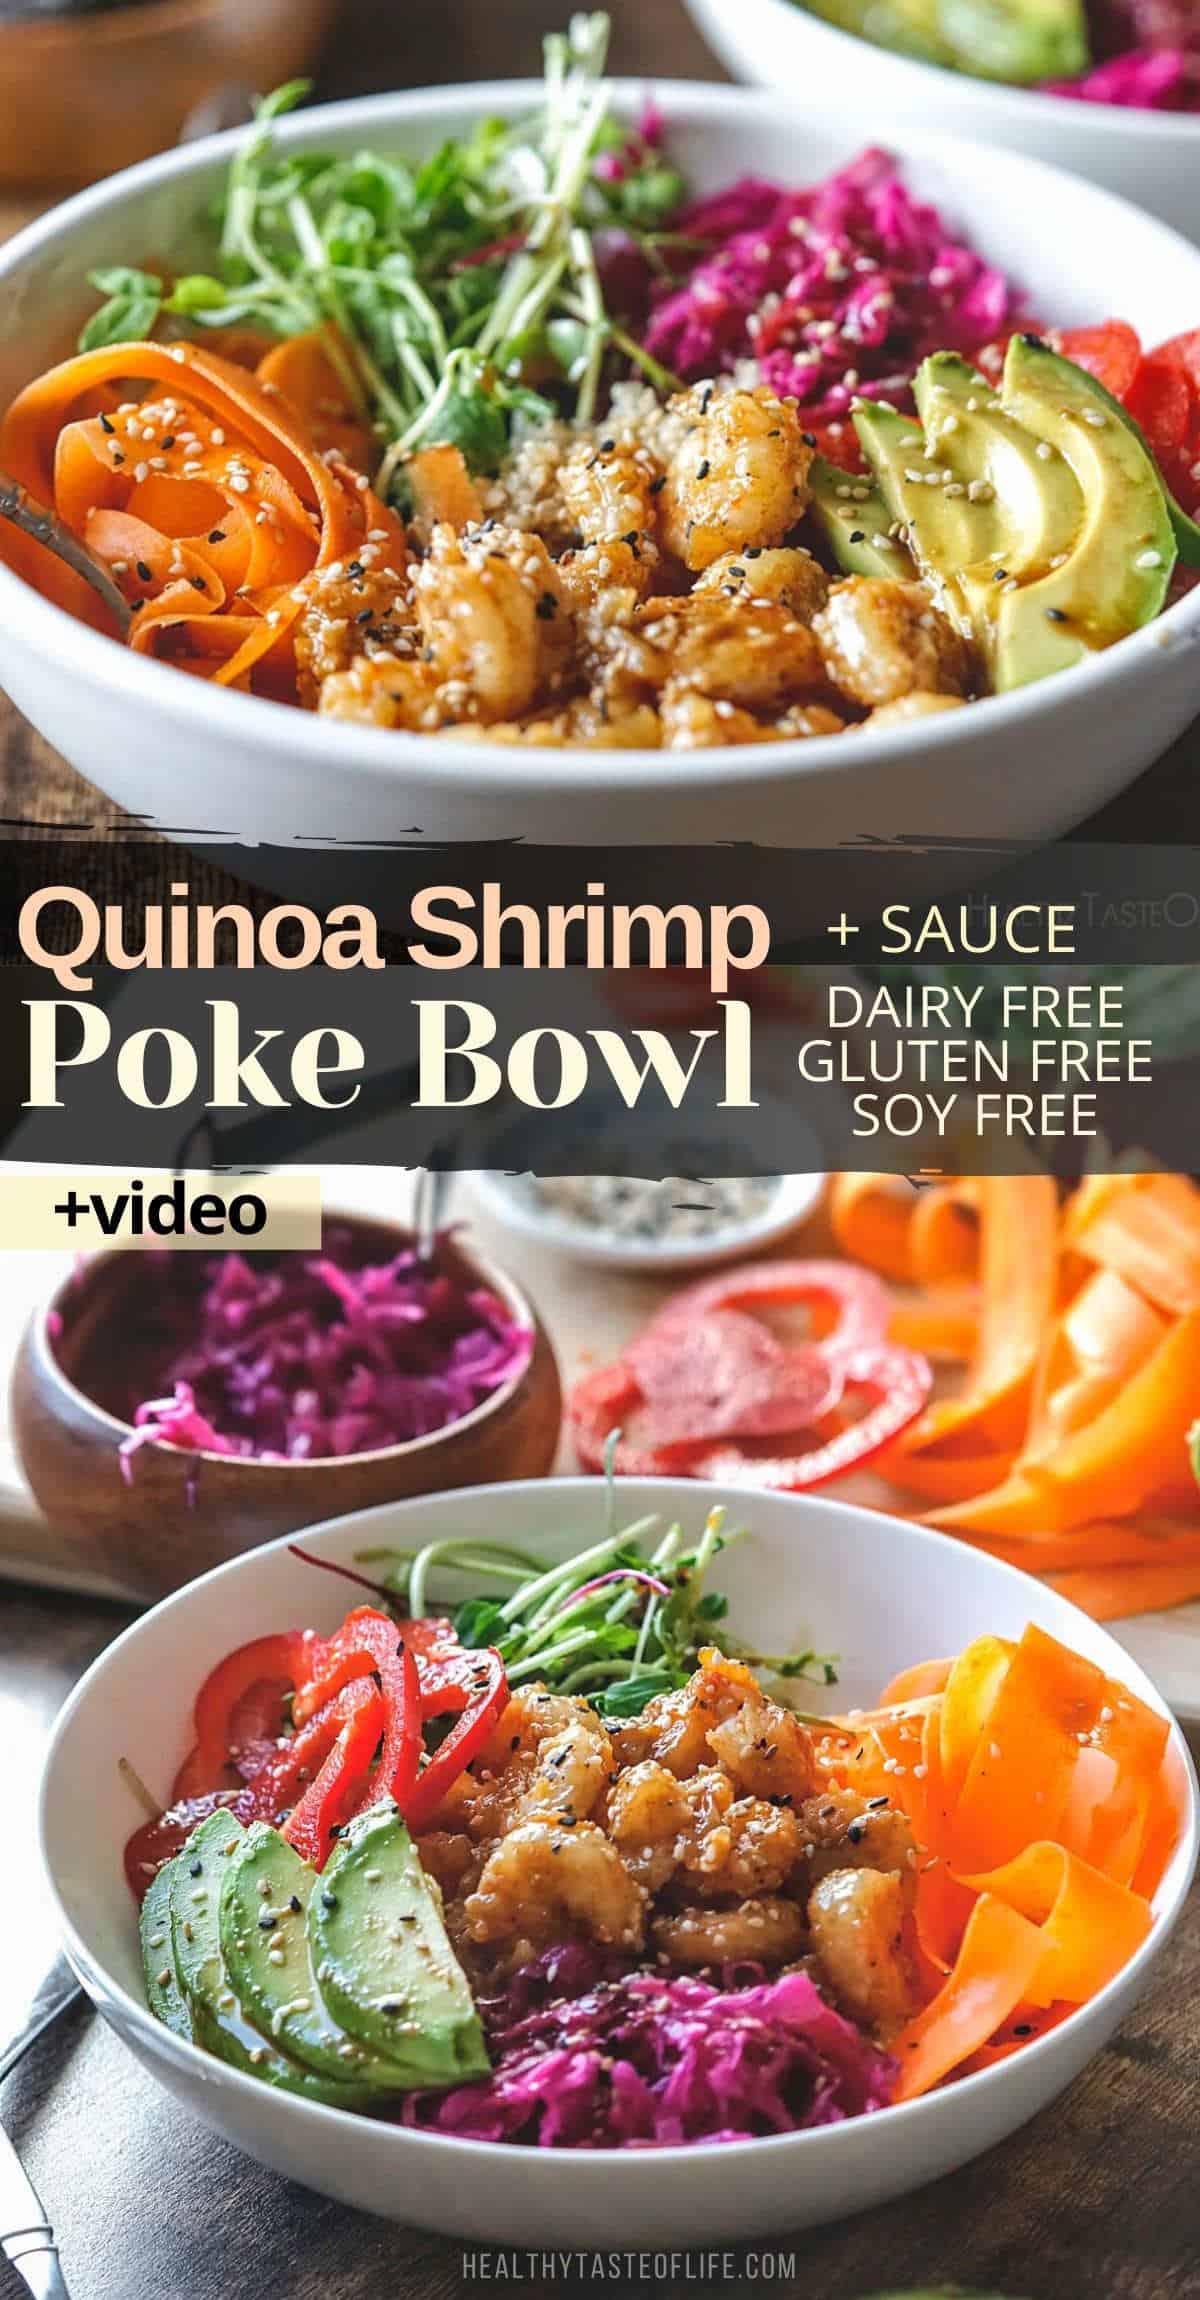 Shrimp quinoa poke bowl recipe.